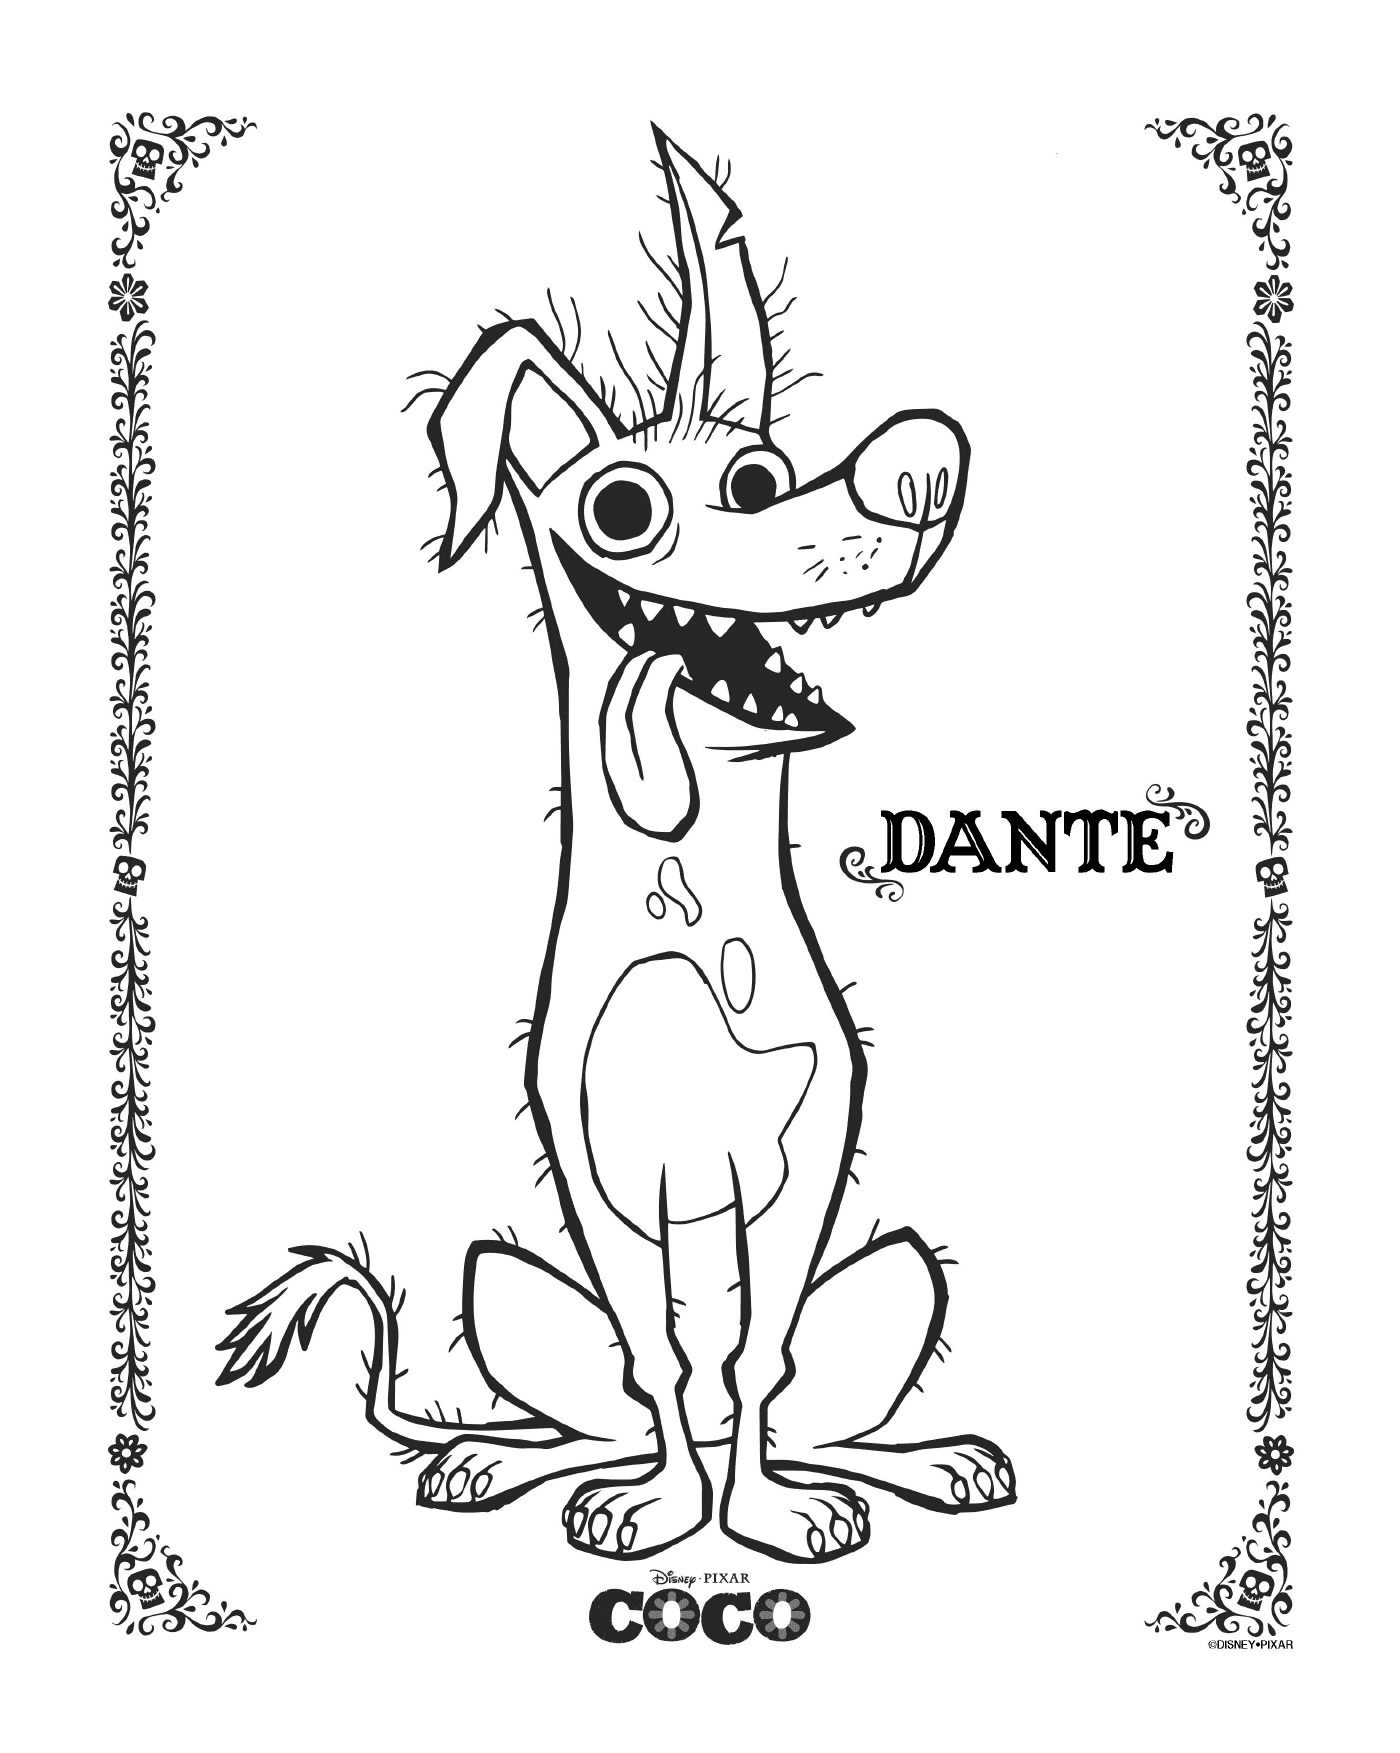  Dante a Coco, Disney 